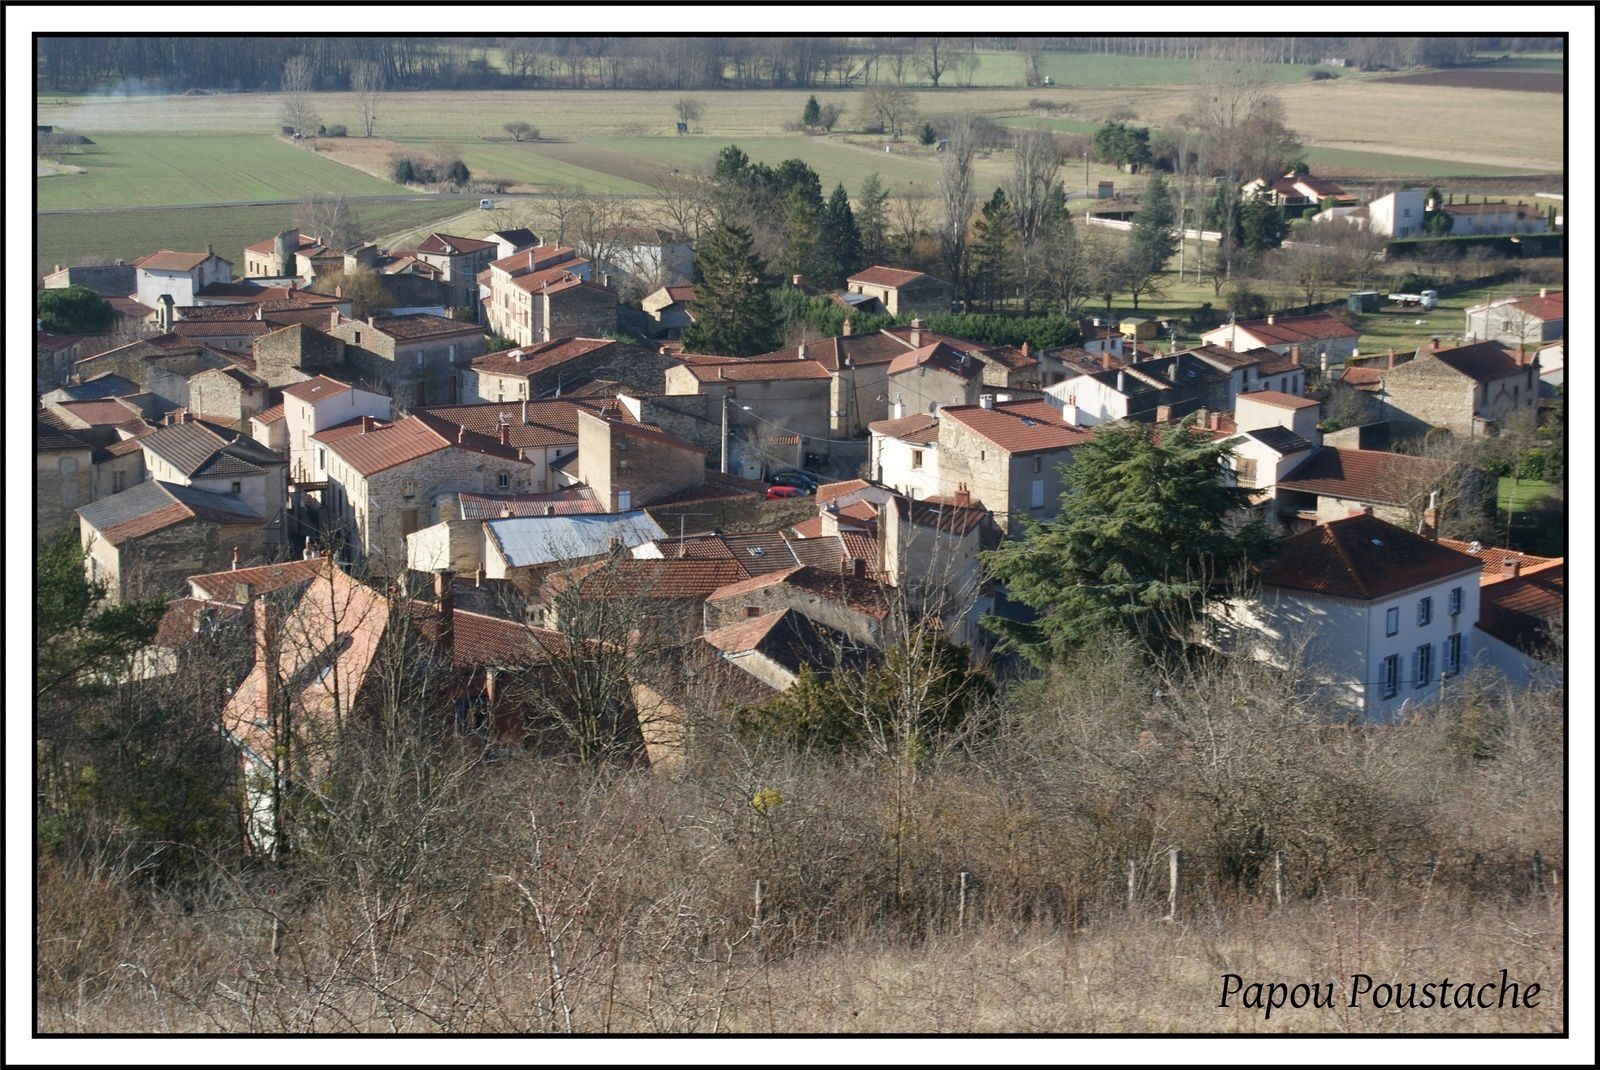  Orsonnette est situé dans le département du Puy-de-Dôme de la région  Auvergne Rhône Alpes  et a une surface de 3.05 km ² pour une population de 205 habitants.